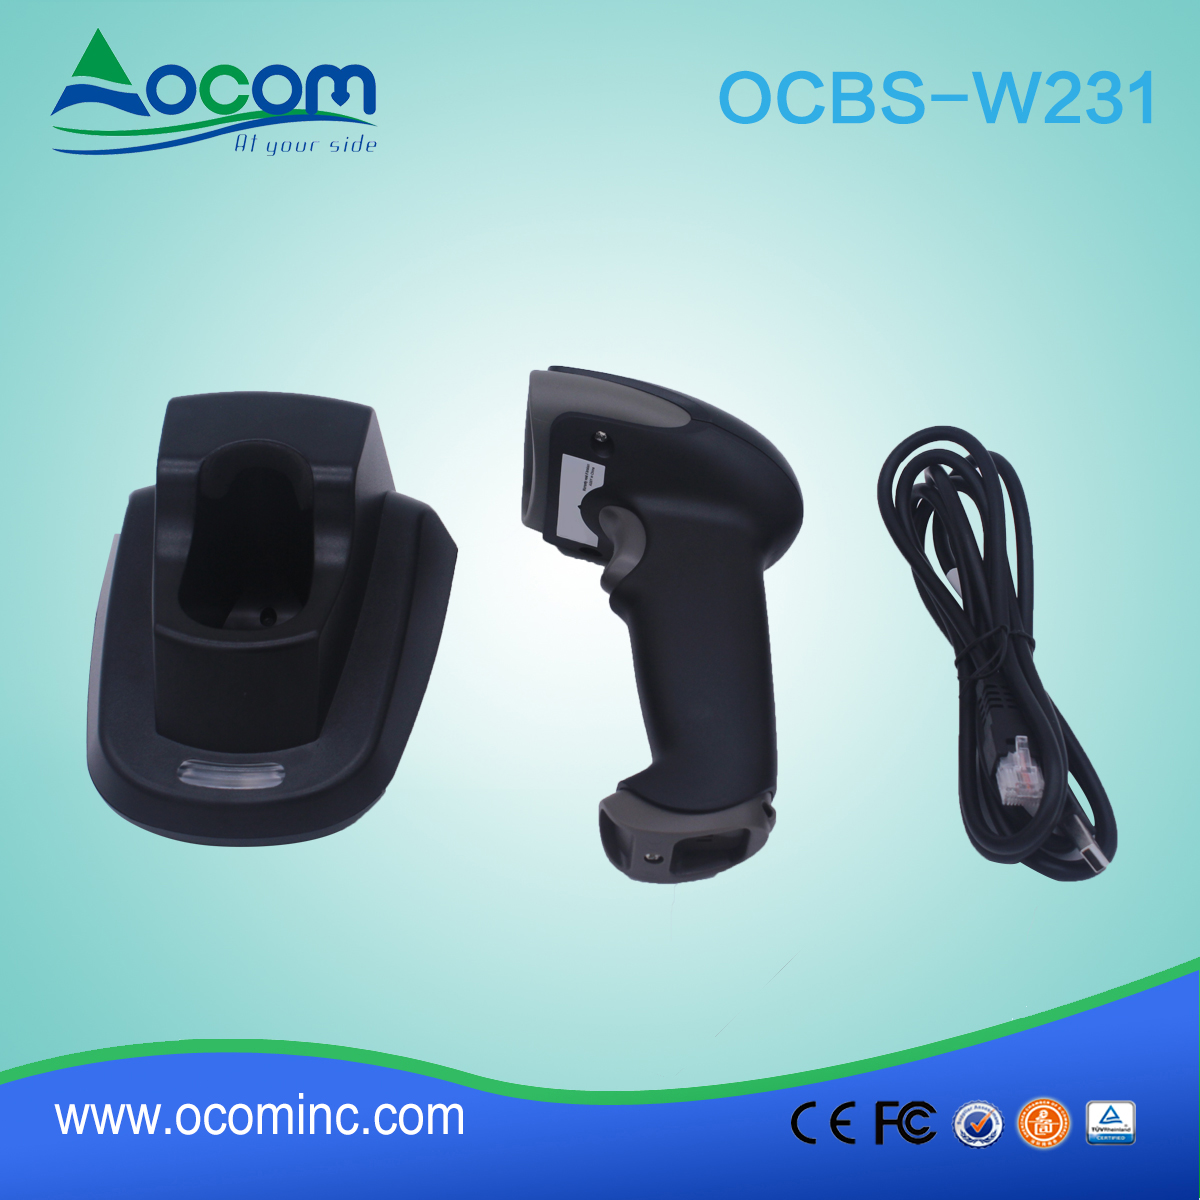 (OCBS-W231) Ruige 433Mhz 2d barcodescanner met craddle